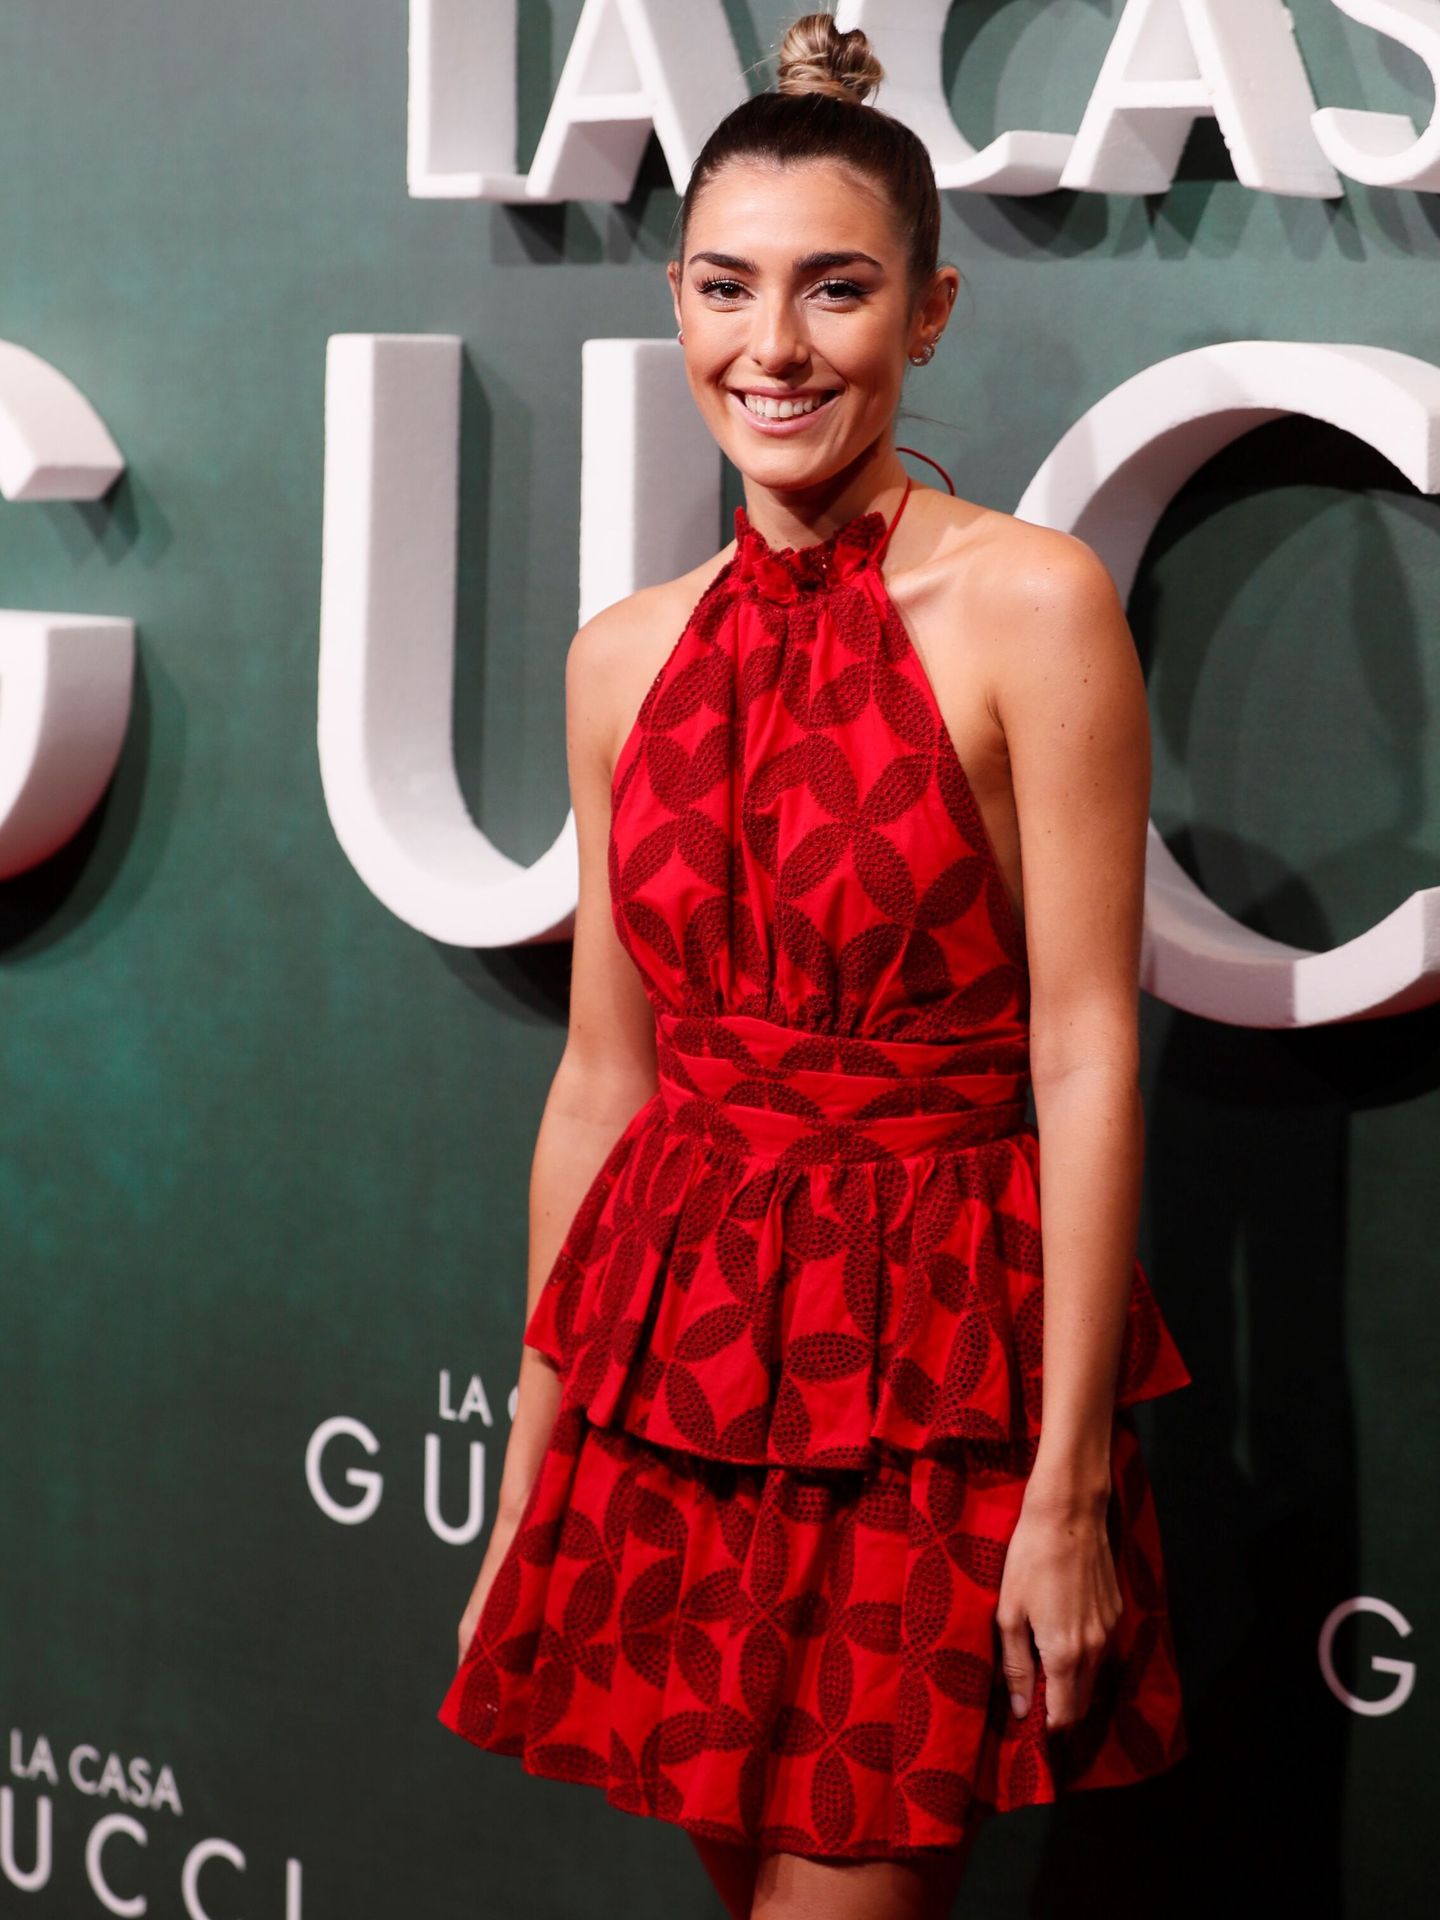 Ana Ferrer Padilla, en el estreno de la película 'La casa Gucci' en los cines Callao. (EFE)